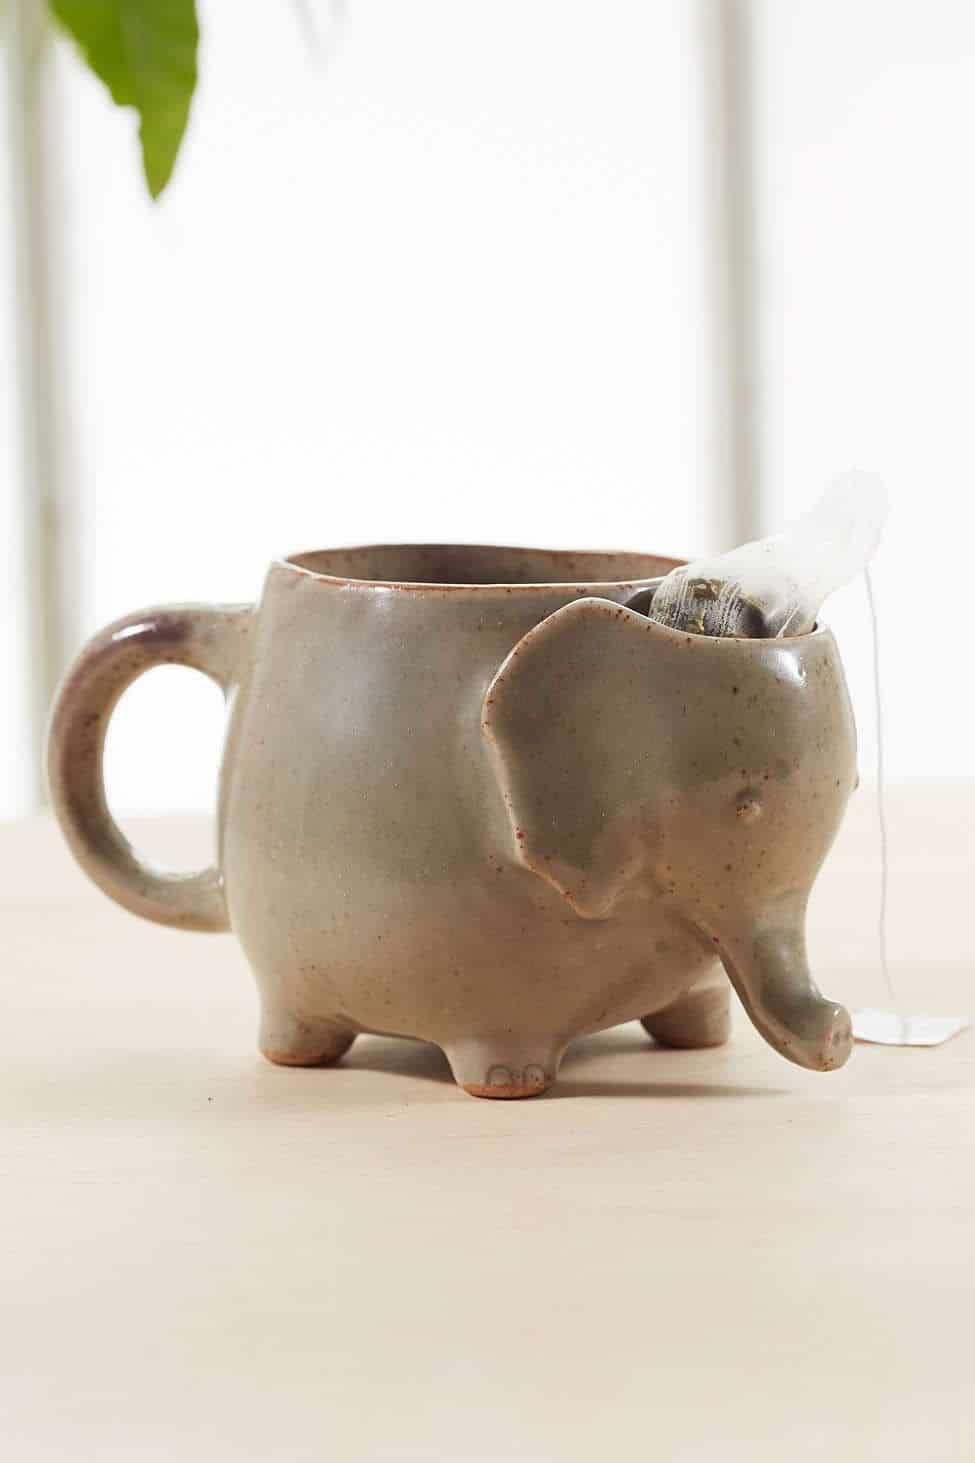 Elephant coffee mug